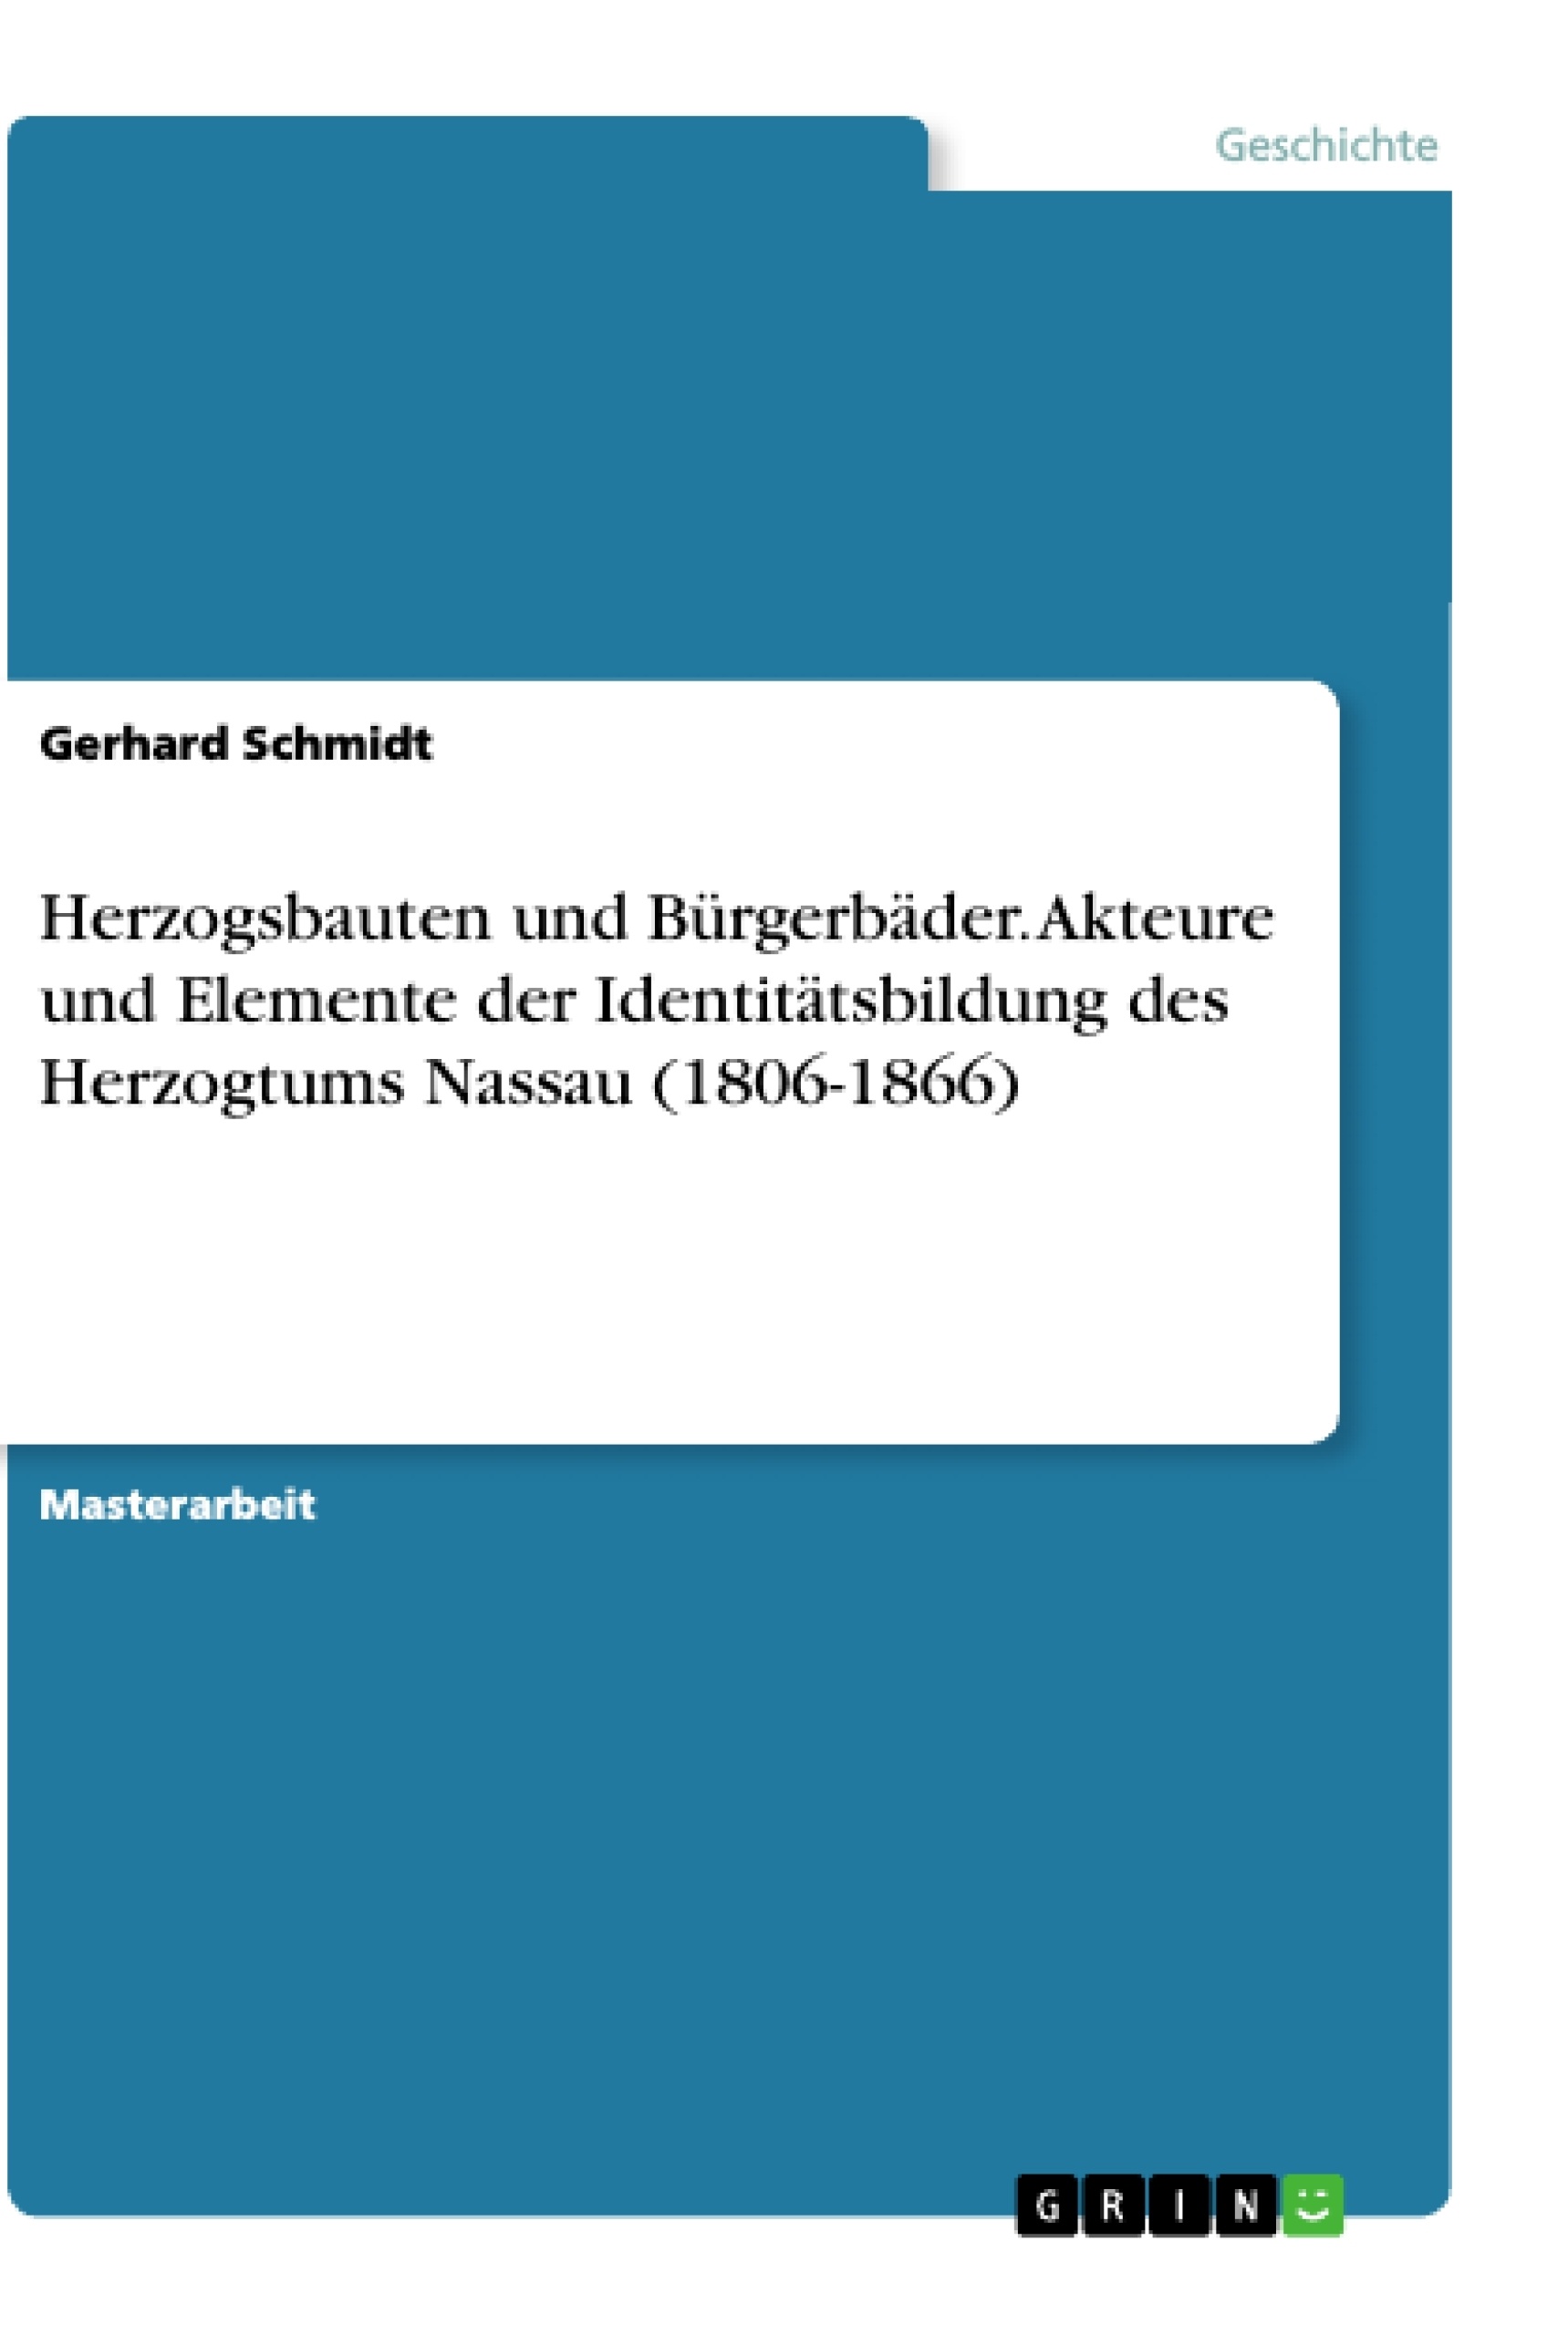 Title: Herzogsbauten und Bürgerbäder. Akteure und Elemente der Identitätsbildung des Herzogtums Nassau (1806-1866)